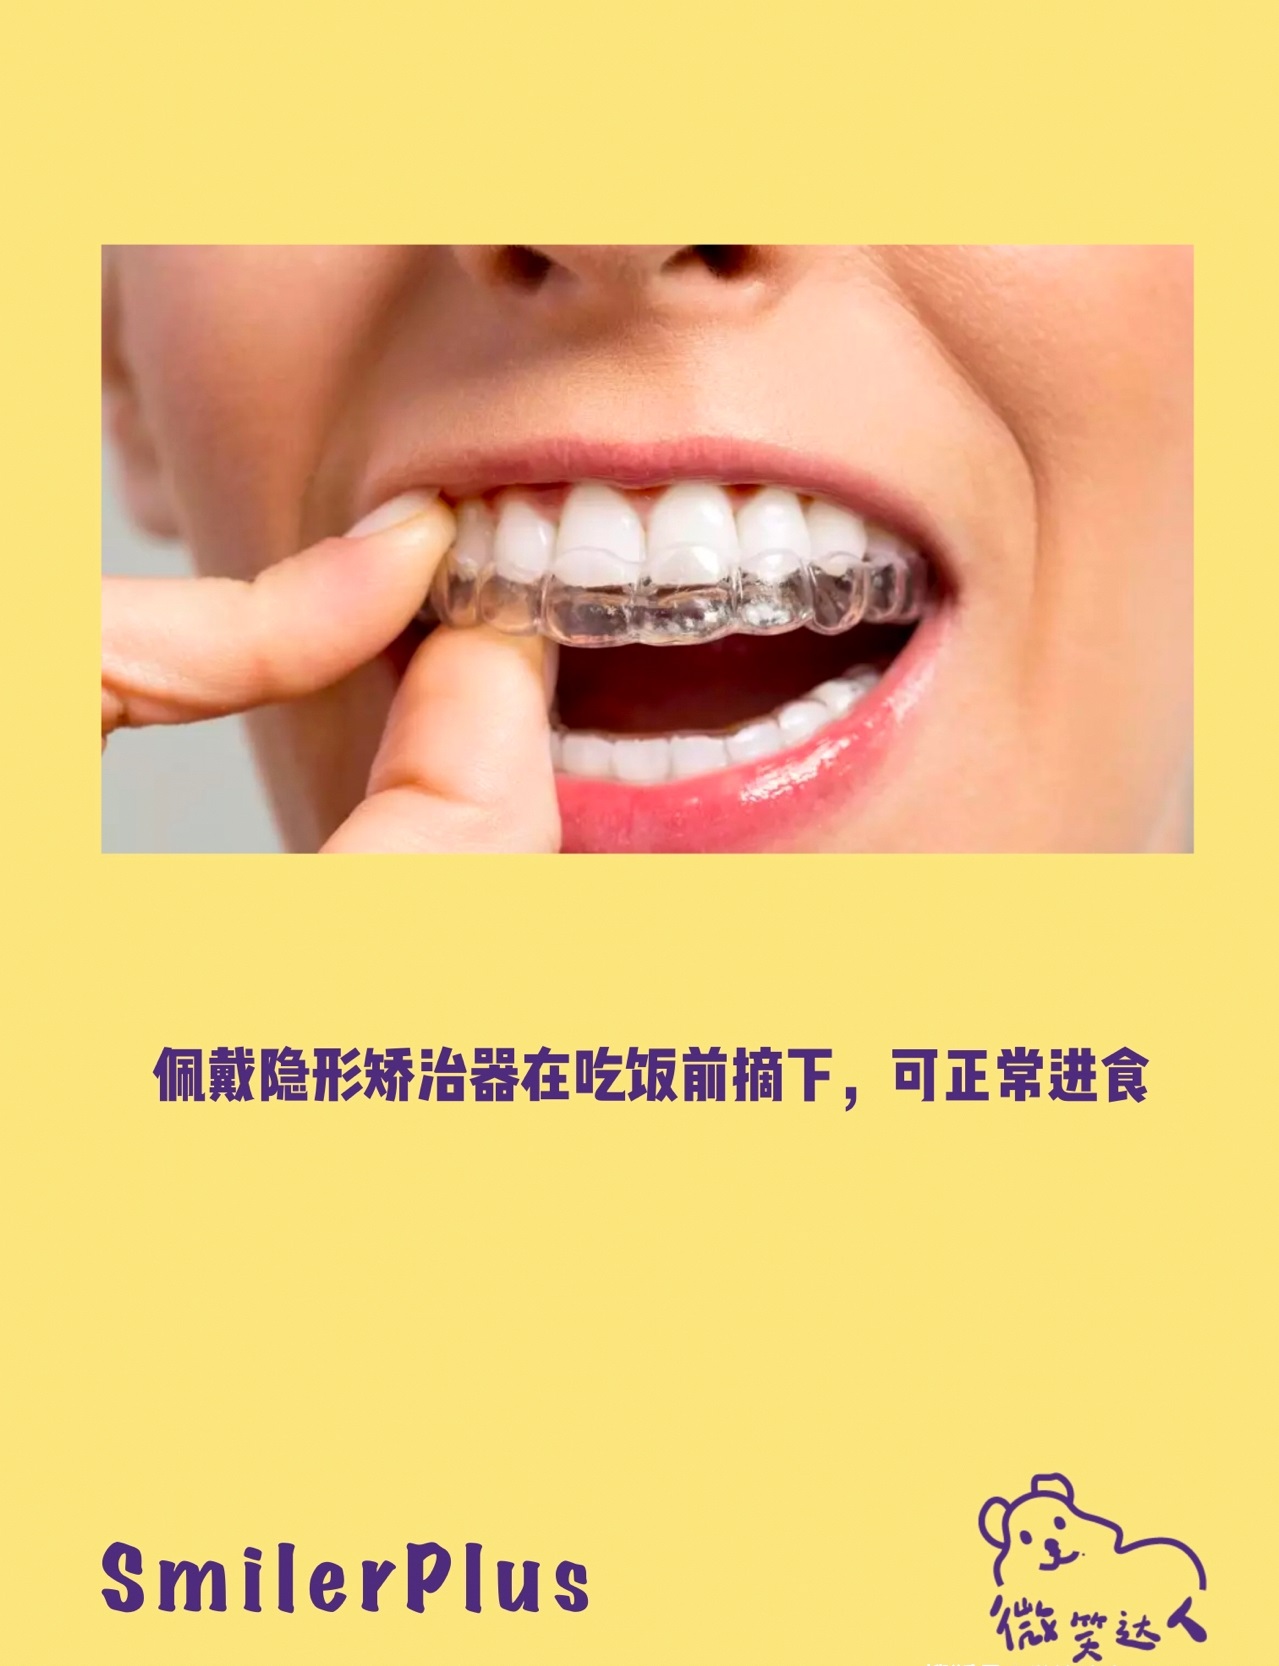 长沙牙齿矫正周权正畸案例解析：利用隐适美在推磨牙向后的方案上的优势建立健康咬颌 - 哔哩哔哩